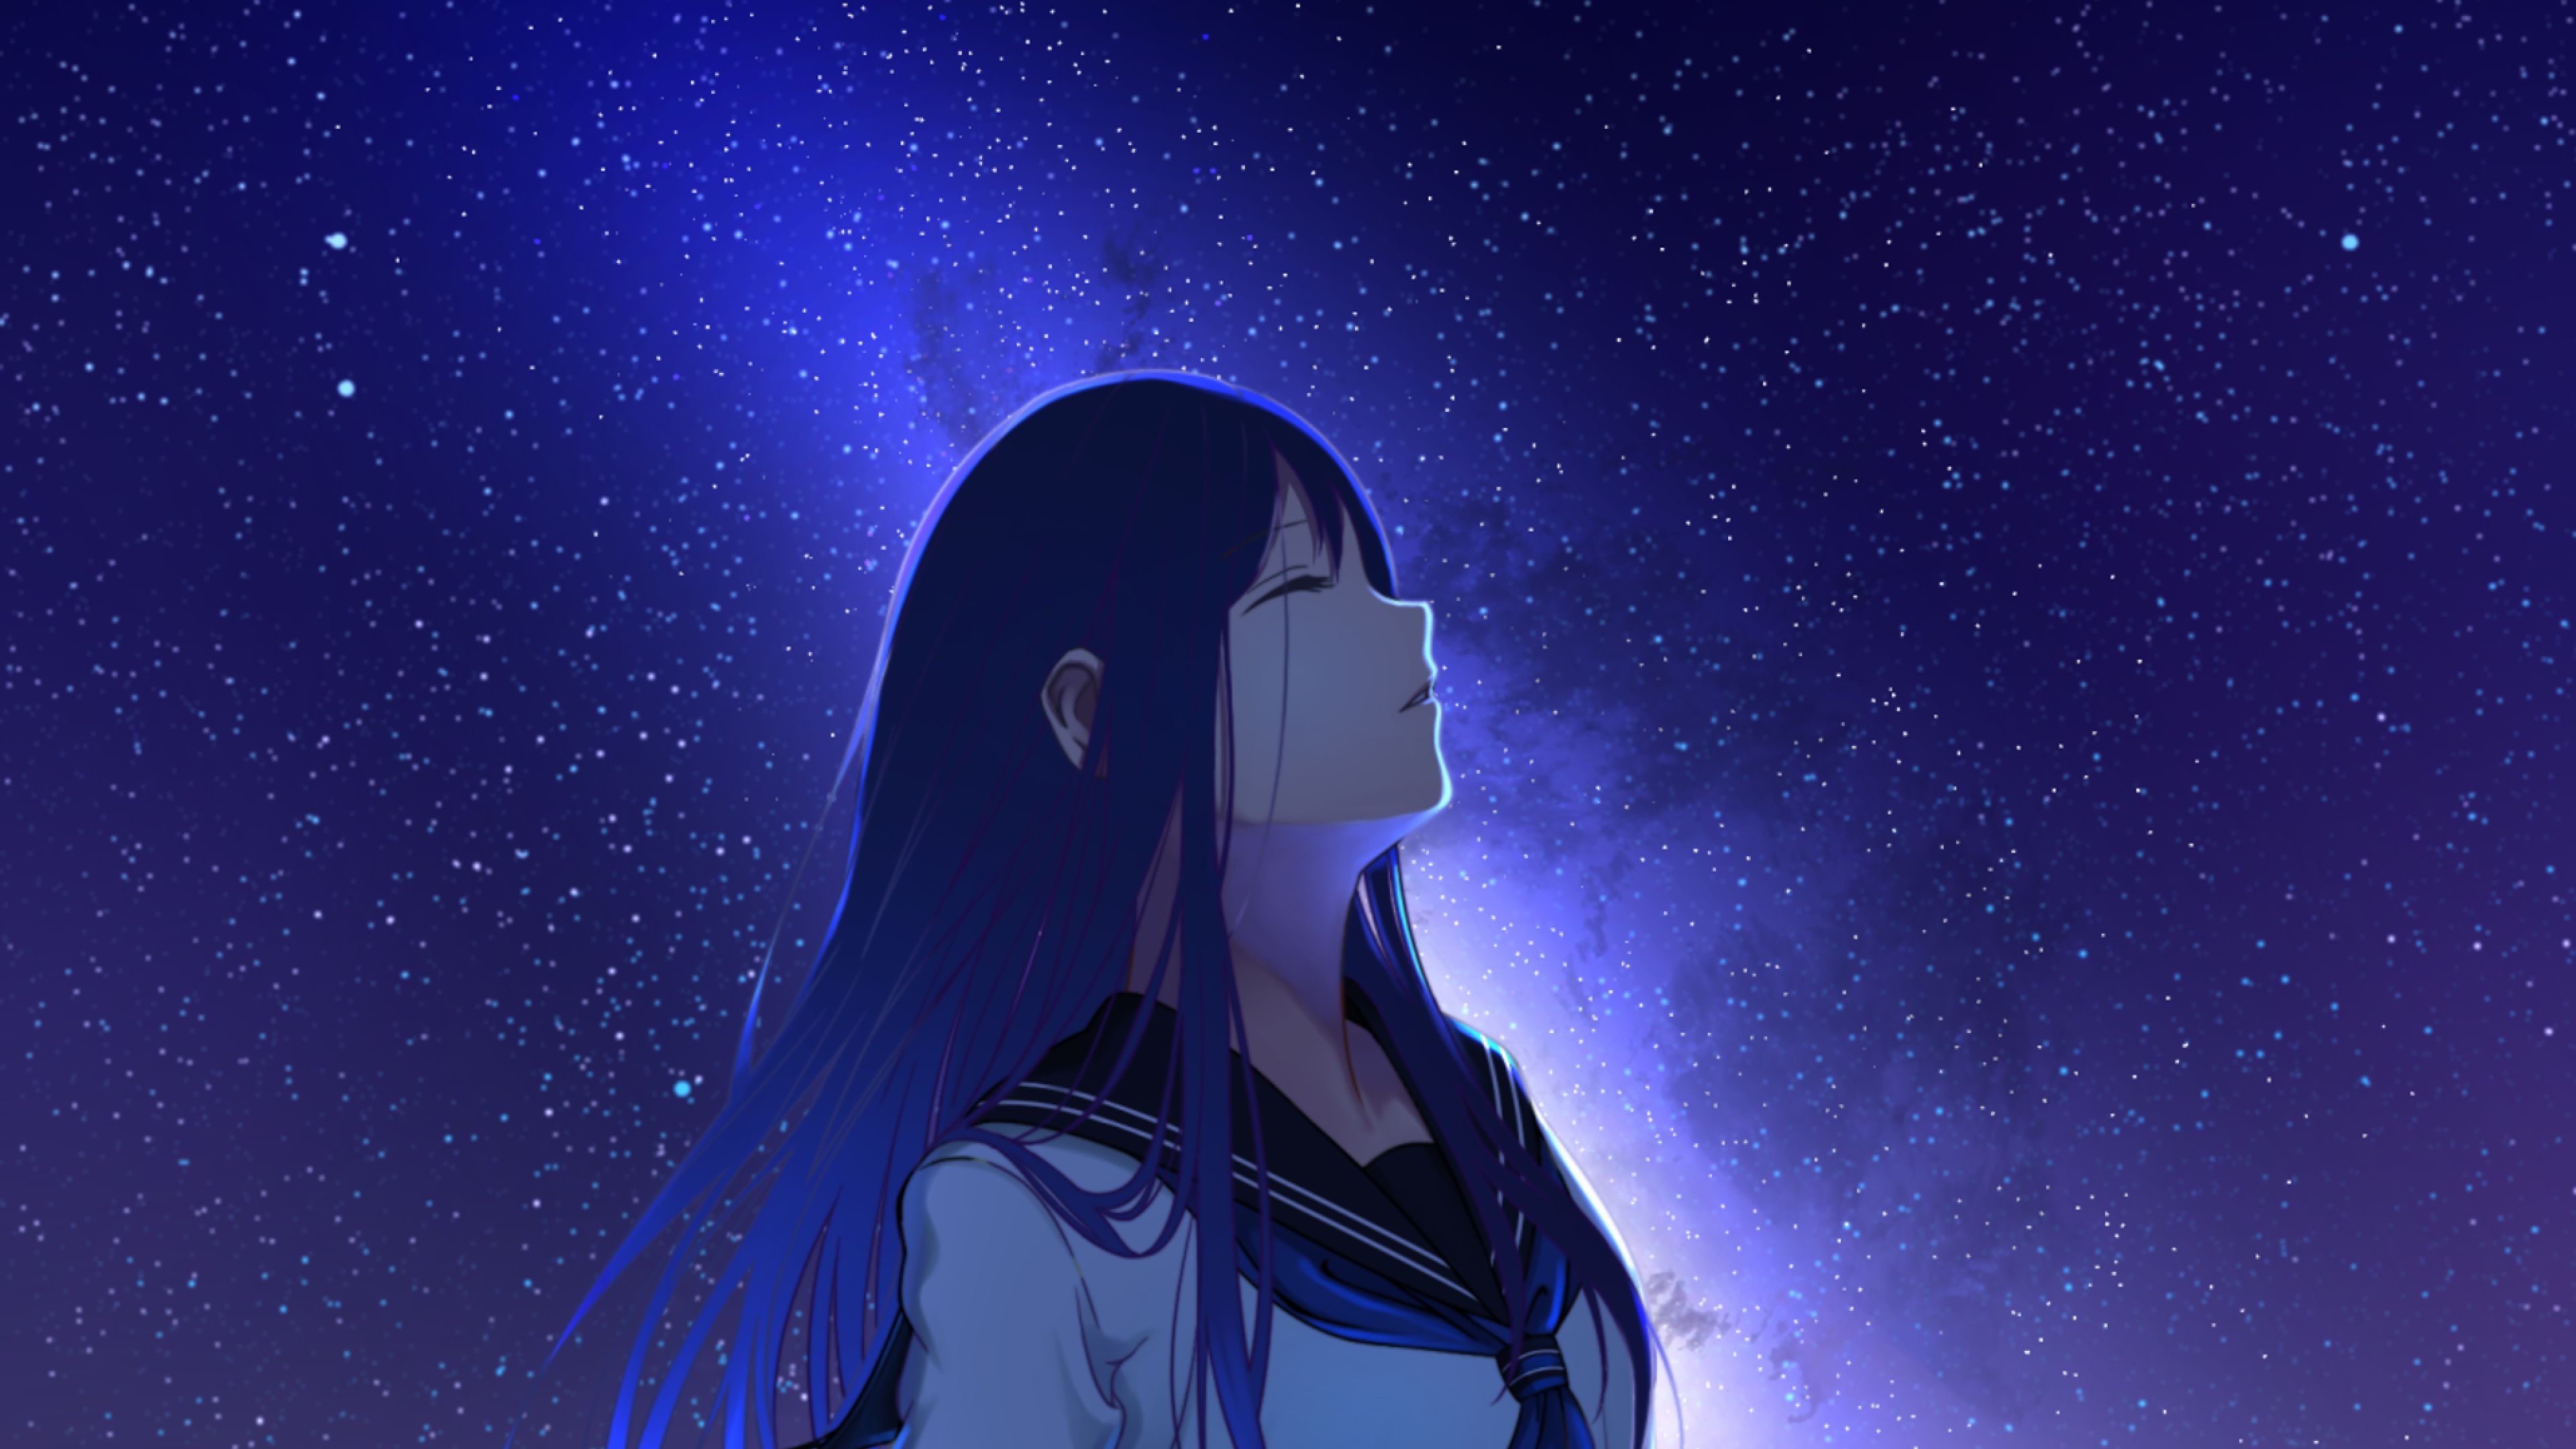 Anime Girl And Night Stars 4K Wallpaper, HD Anime 4K Wallpaper